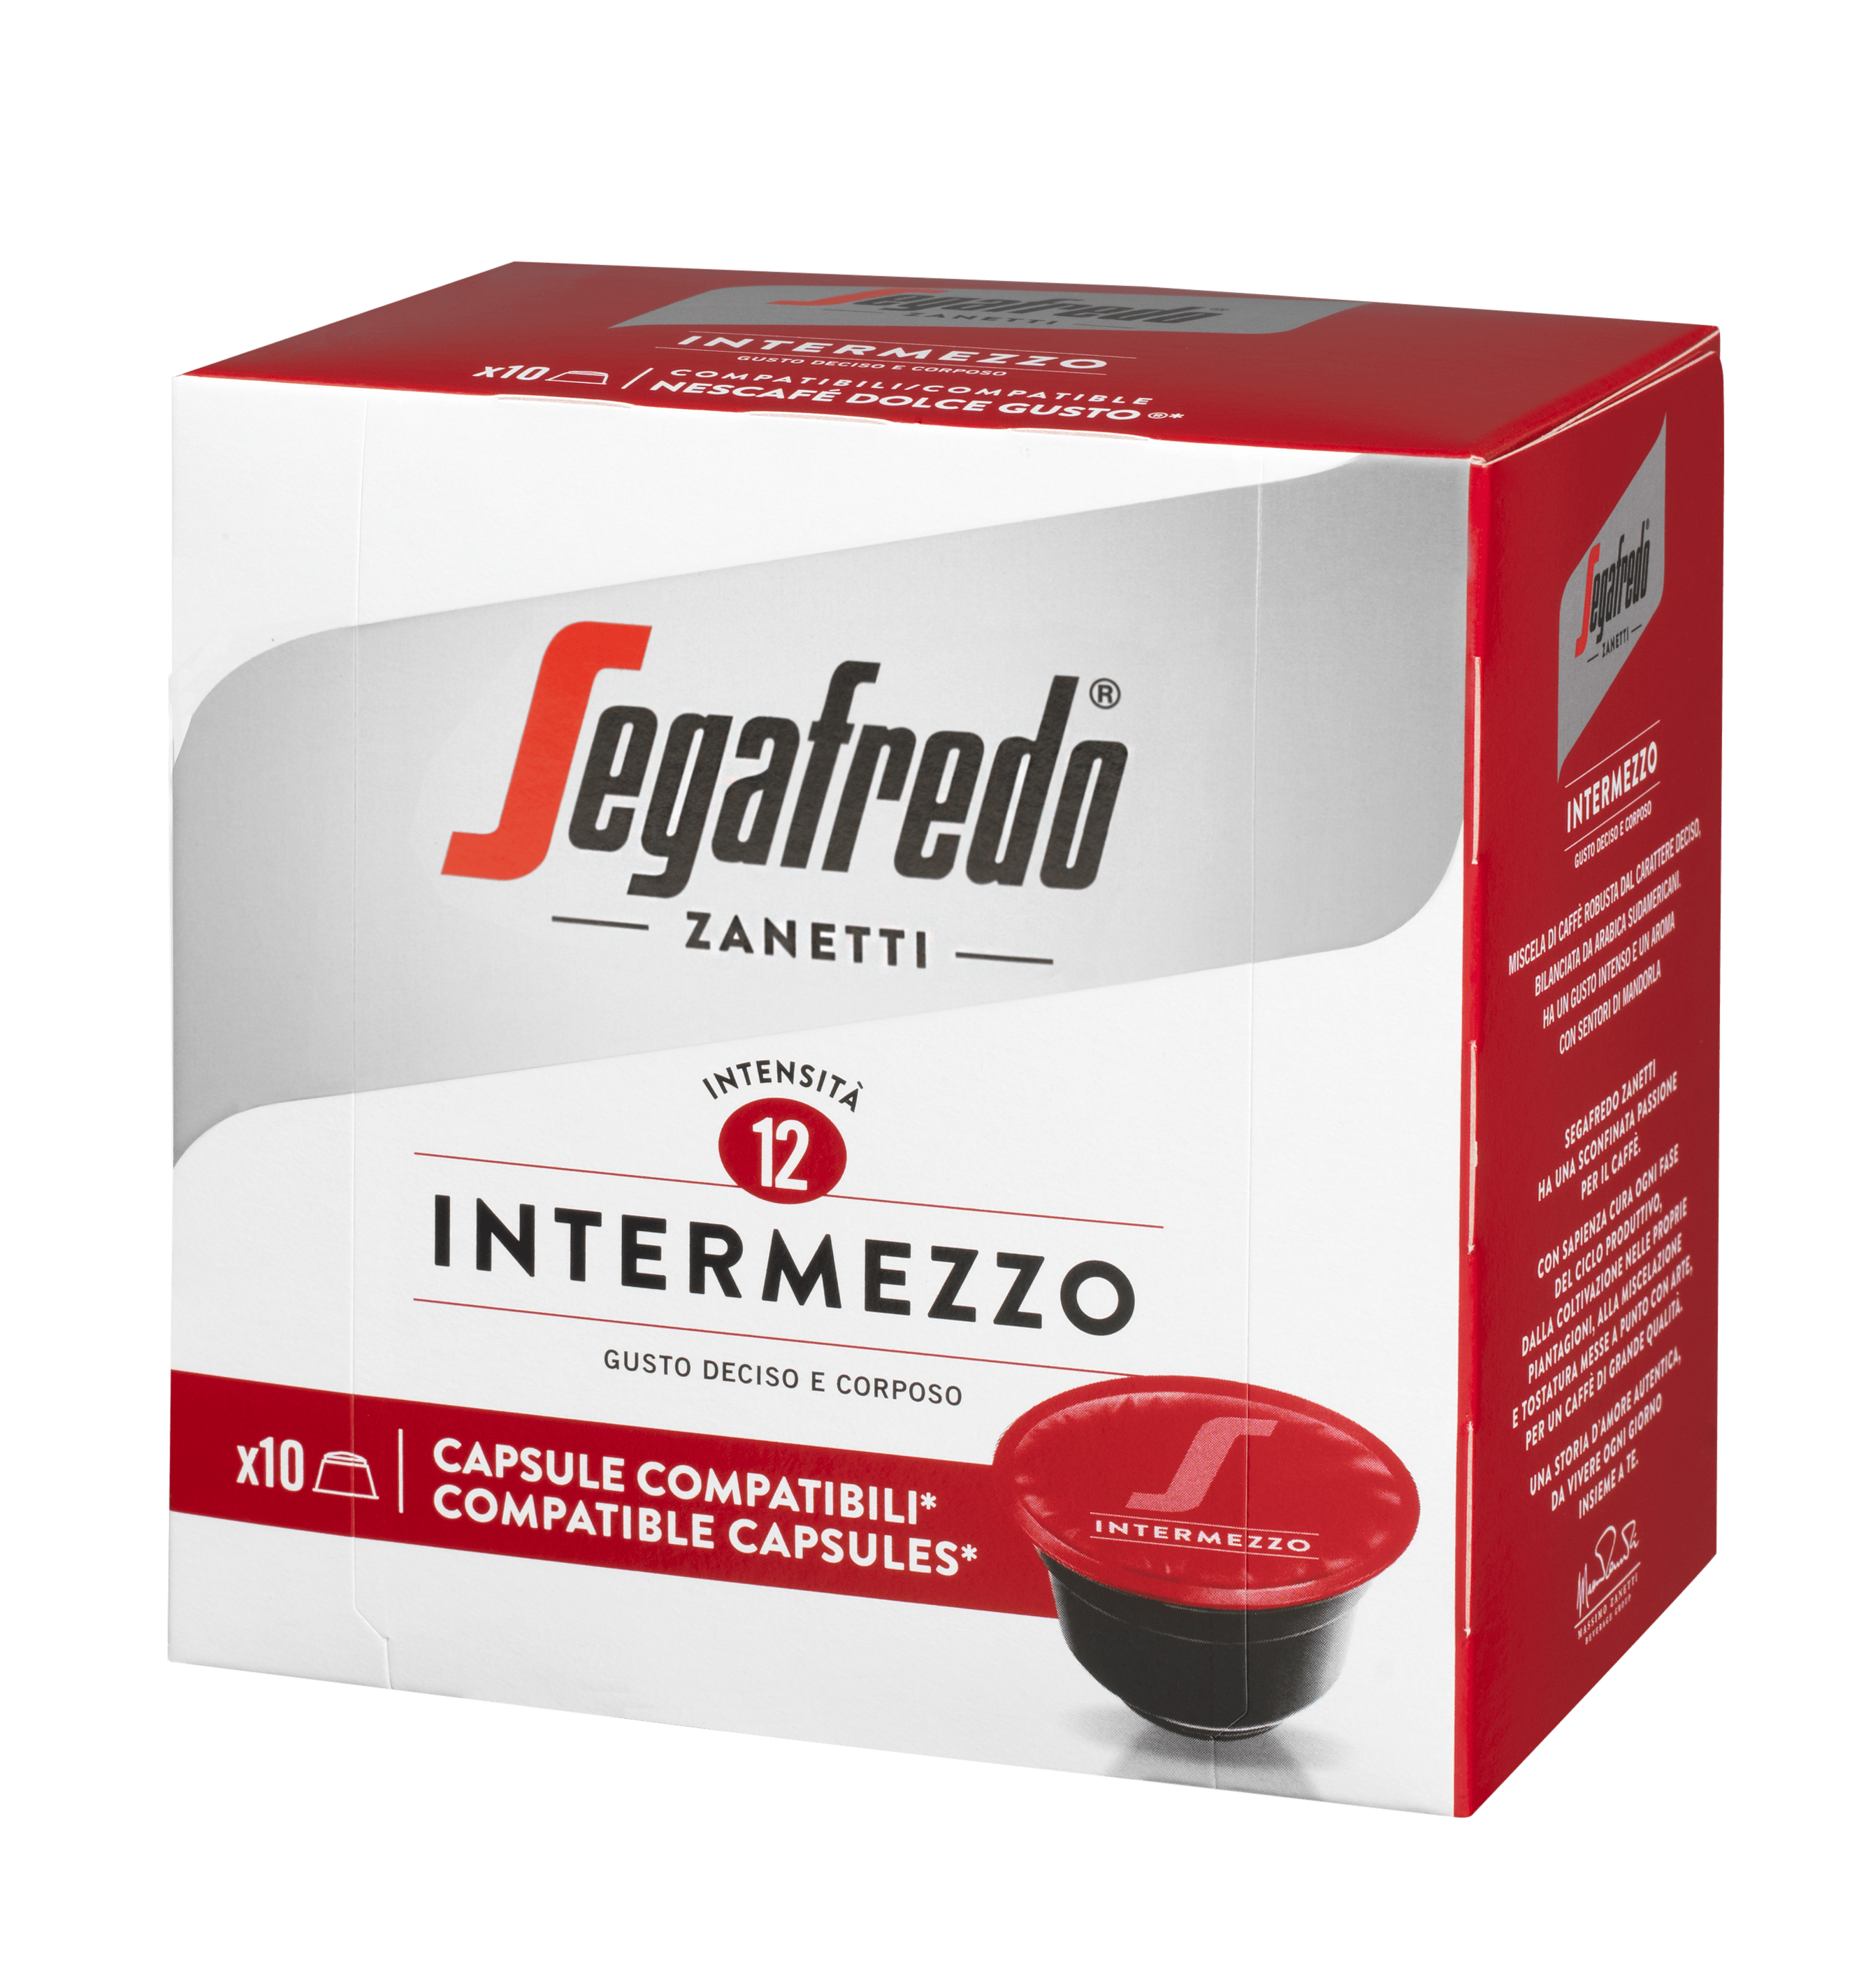 SEGAFREDO ZANETTI - INTERMEZZO COFFEE CAPSULE